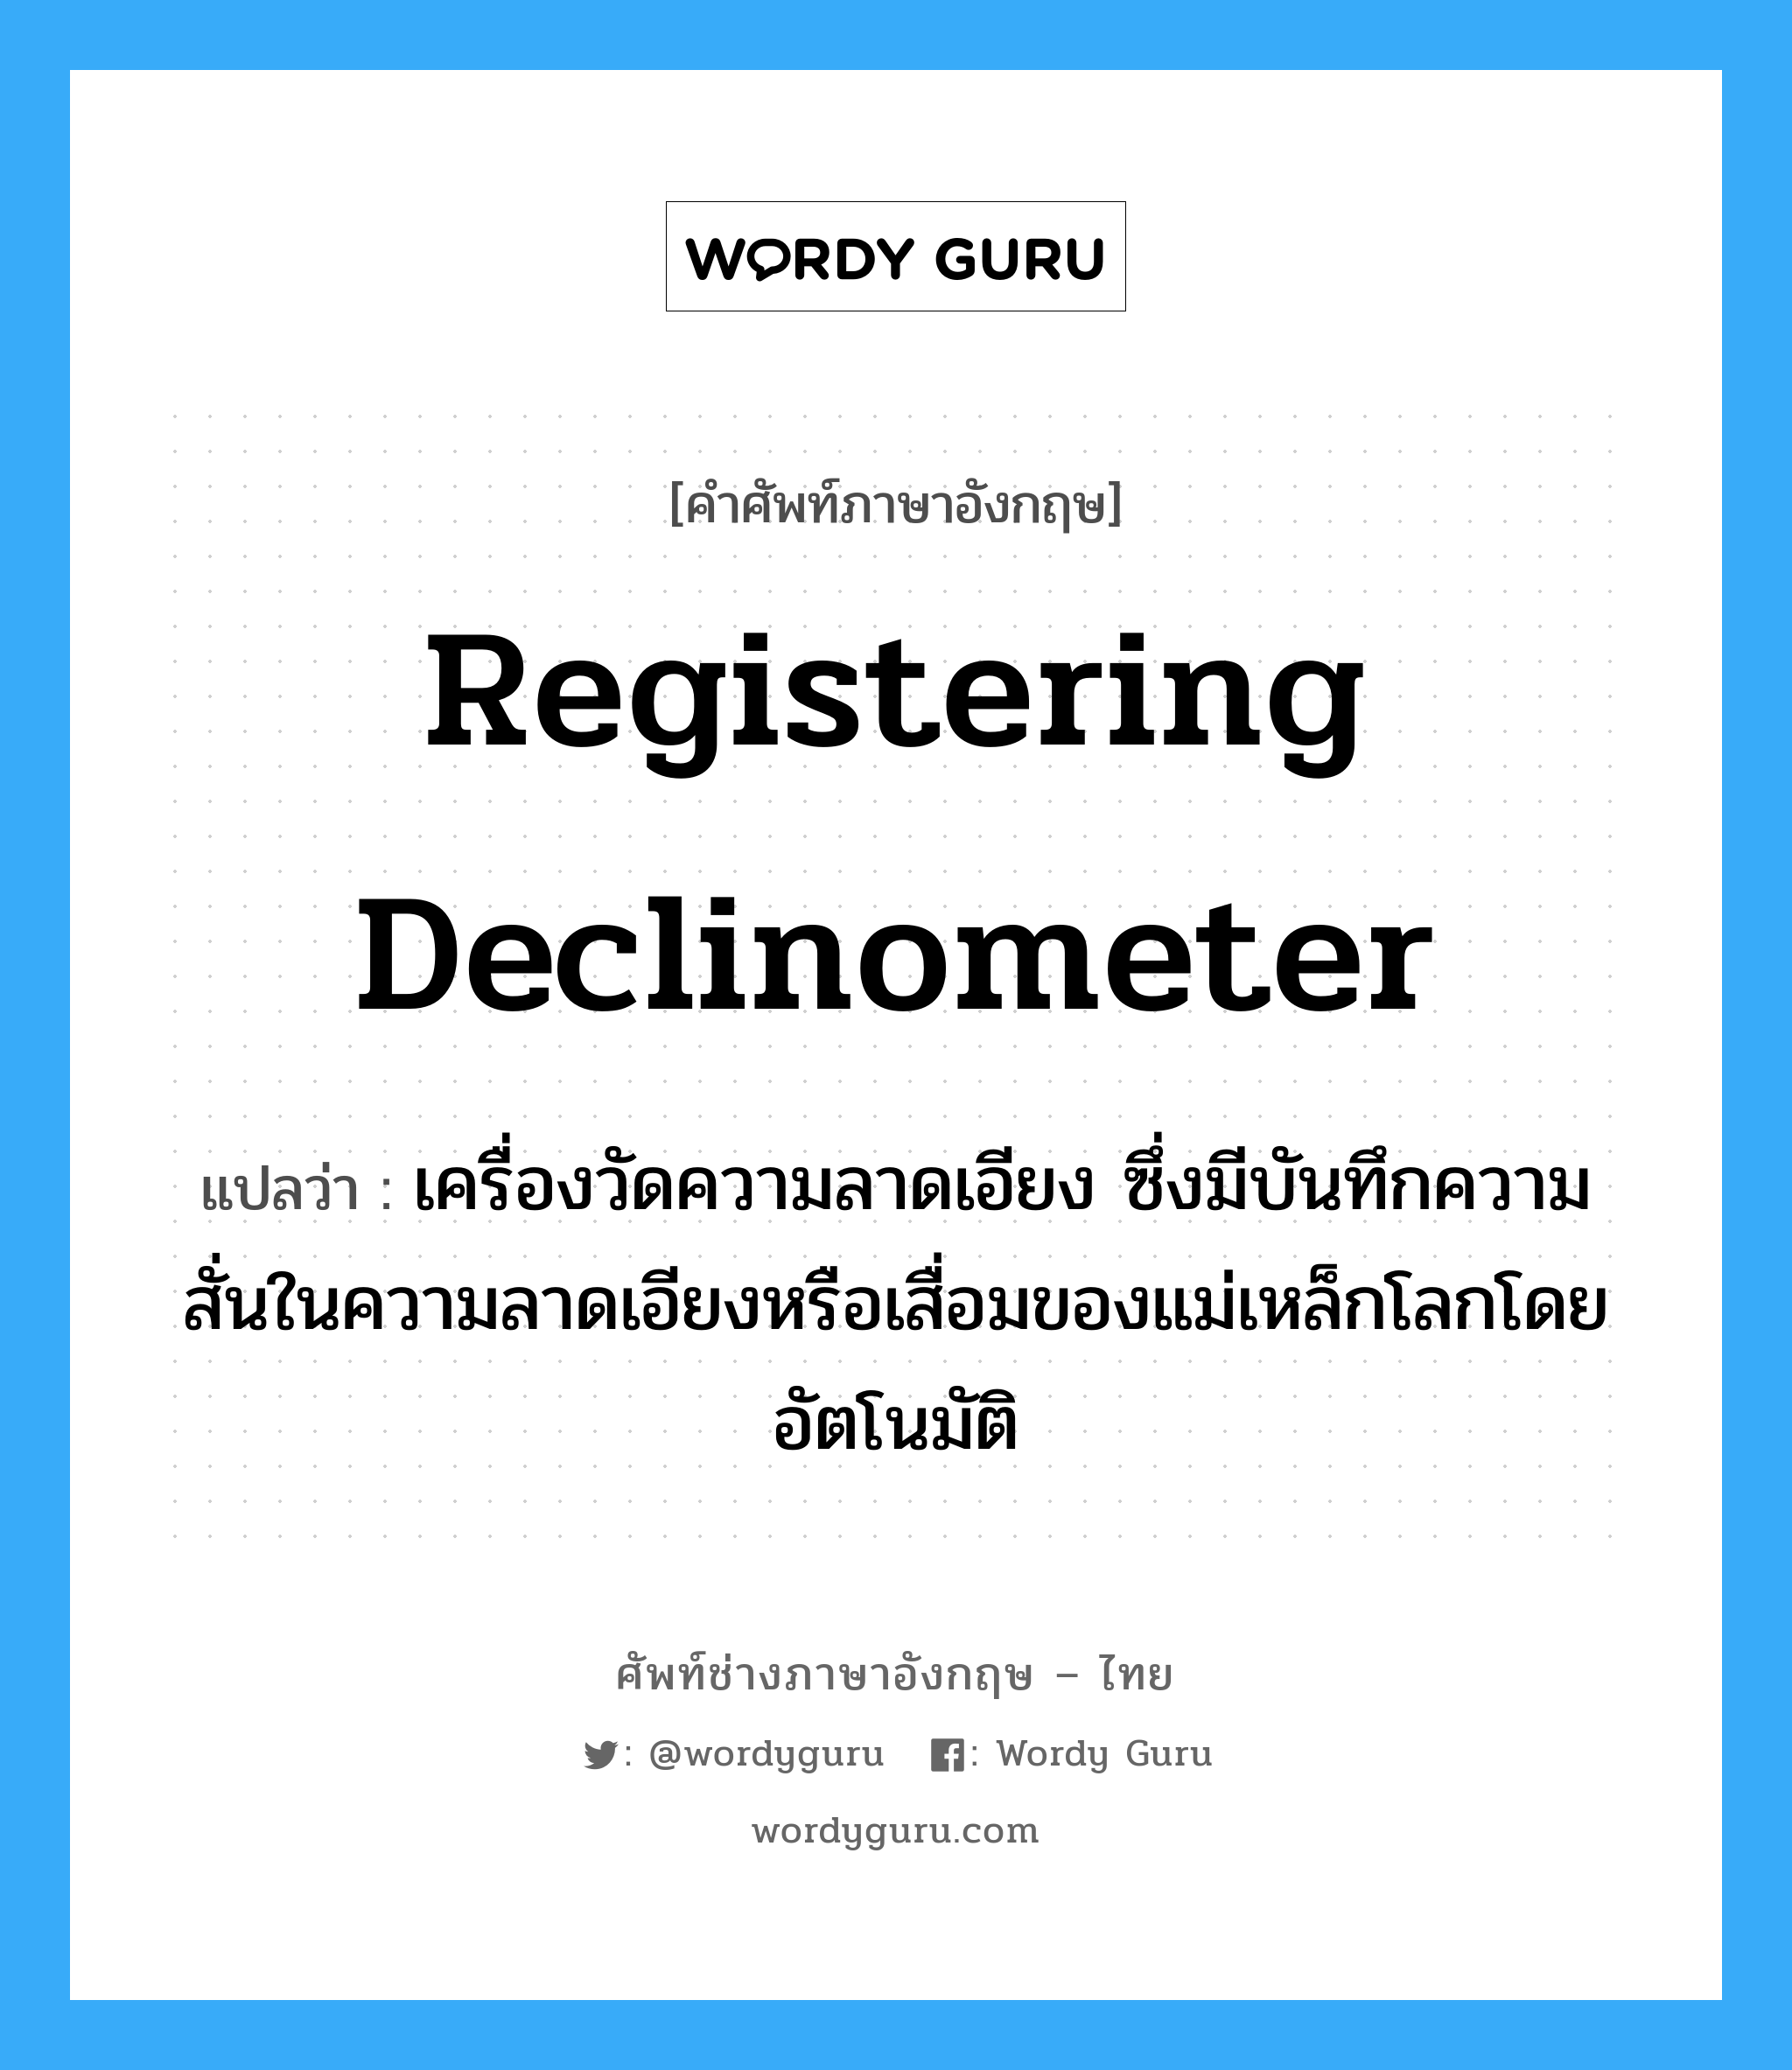 registering declinometer แปลว่า?, คำศัพท์ช่างภาษาอังกฤษ - ไทย registering declinometer คำศัพท์ภาษาอังกฤษ registering declinometer แปลว่า เครื่องวัดความลาดเอียง ซึ่งมีบันทึกความสั่นในความลาดเอียงหรือเสื่อมของแม่เหล็กโลกโดยอัตโนมัติ